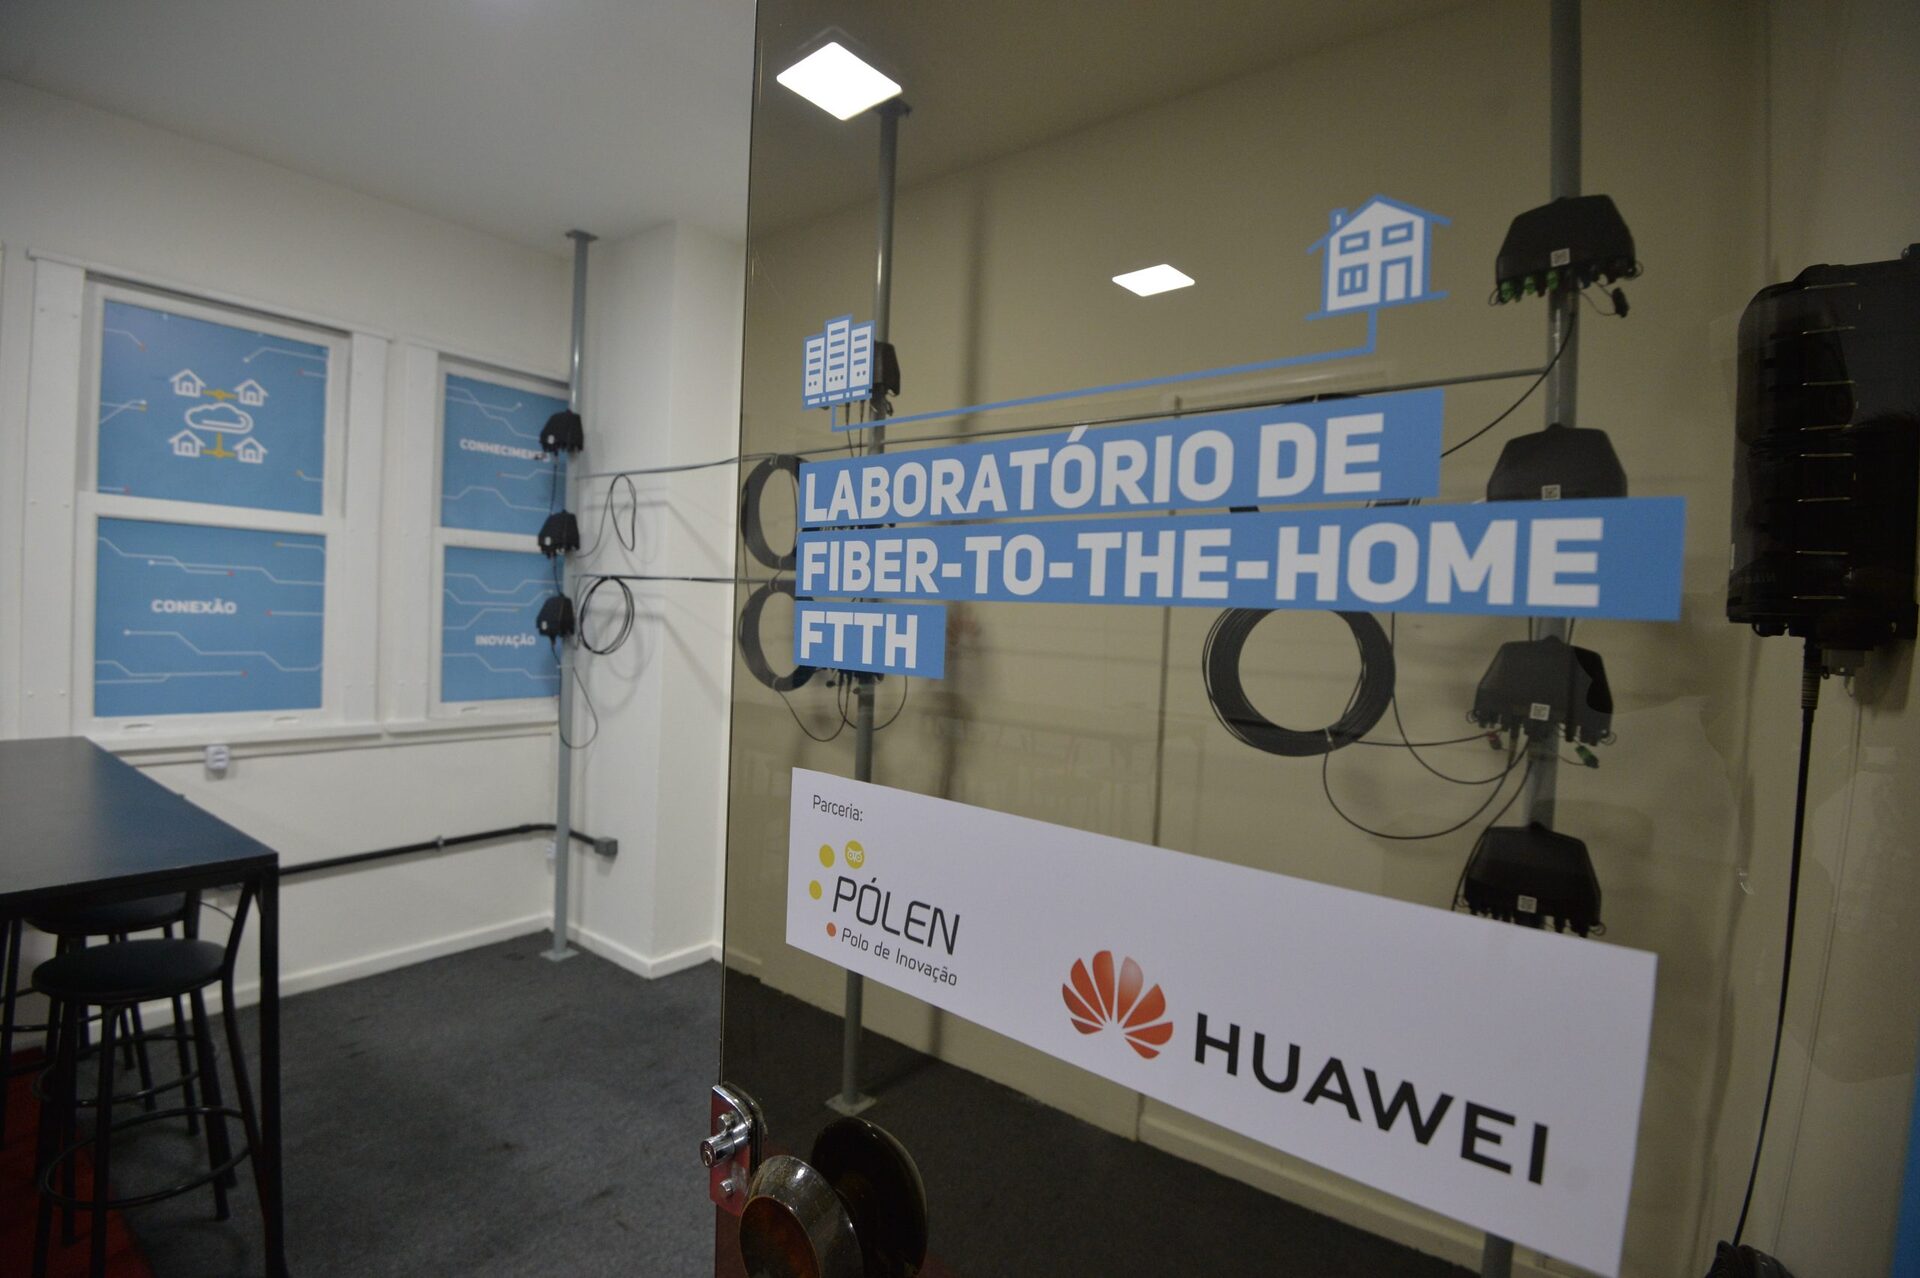 Um dos 12 laboratórios de ftth/fttx, que contou com a colaboração da Huawei, fica na Unisuam, no Rio de Janeiro